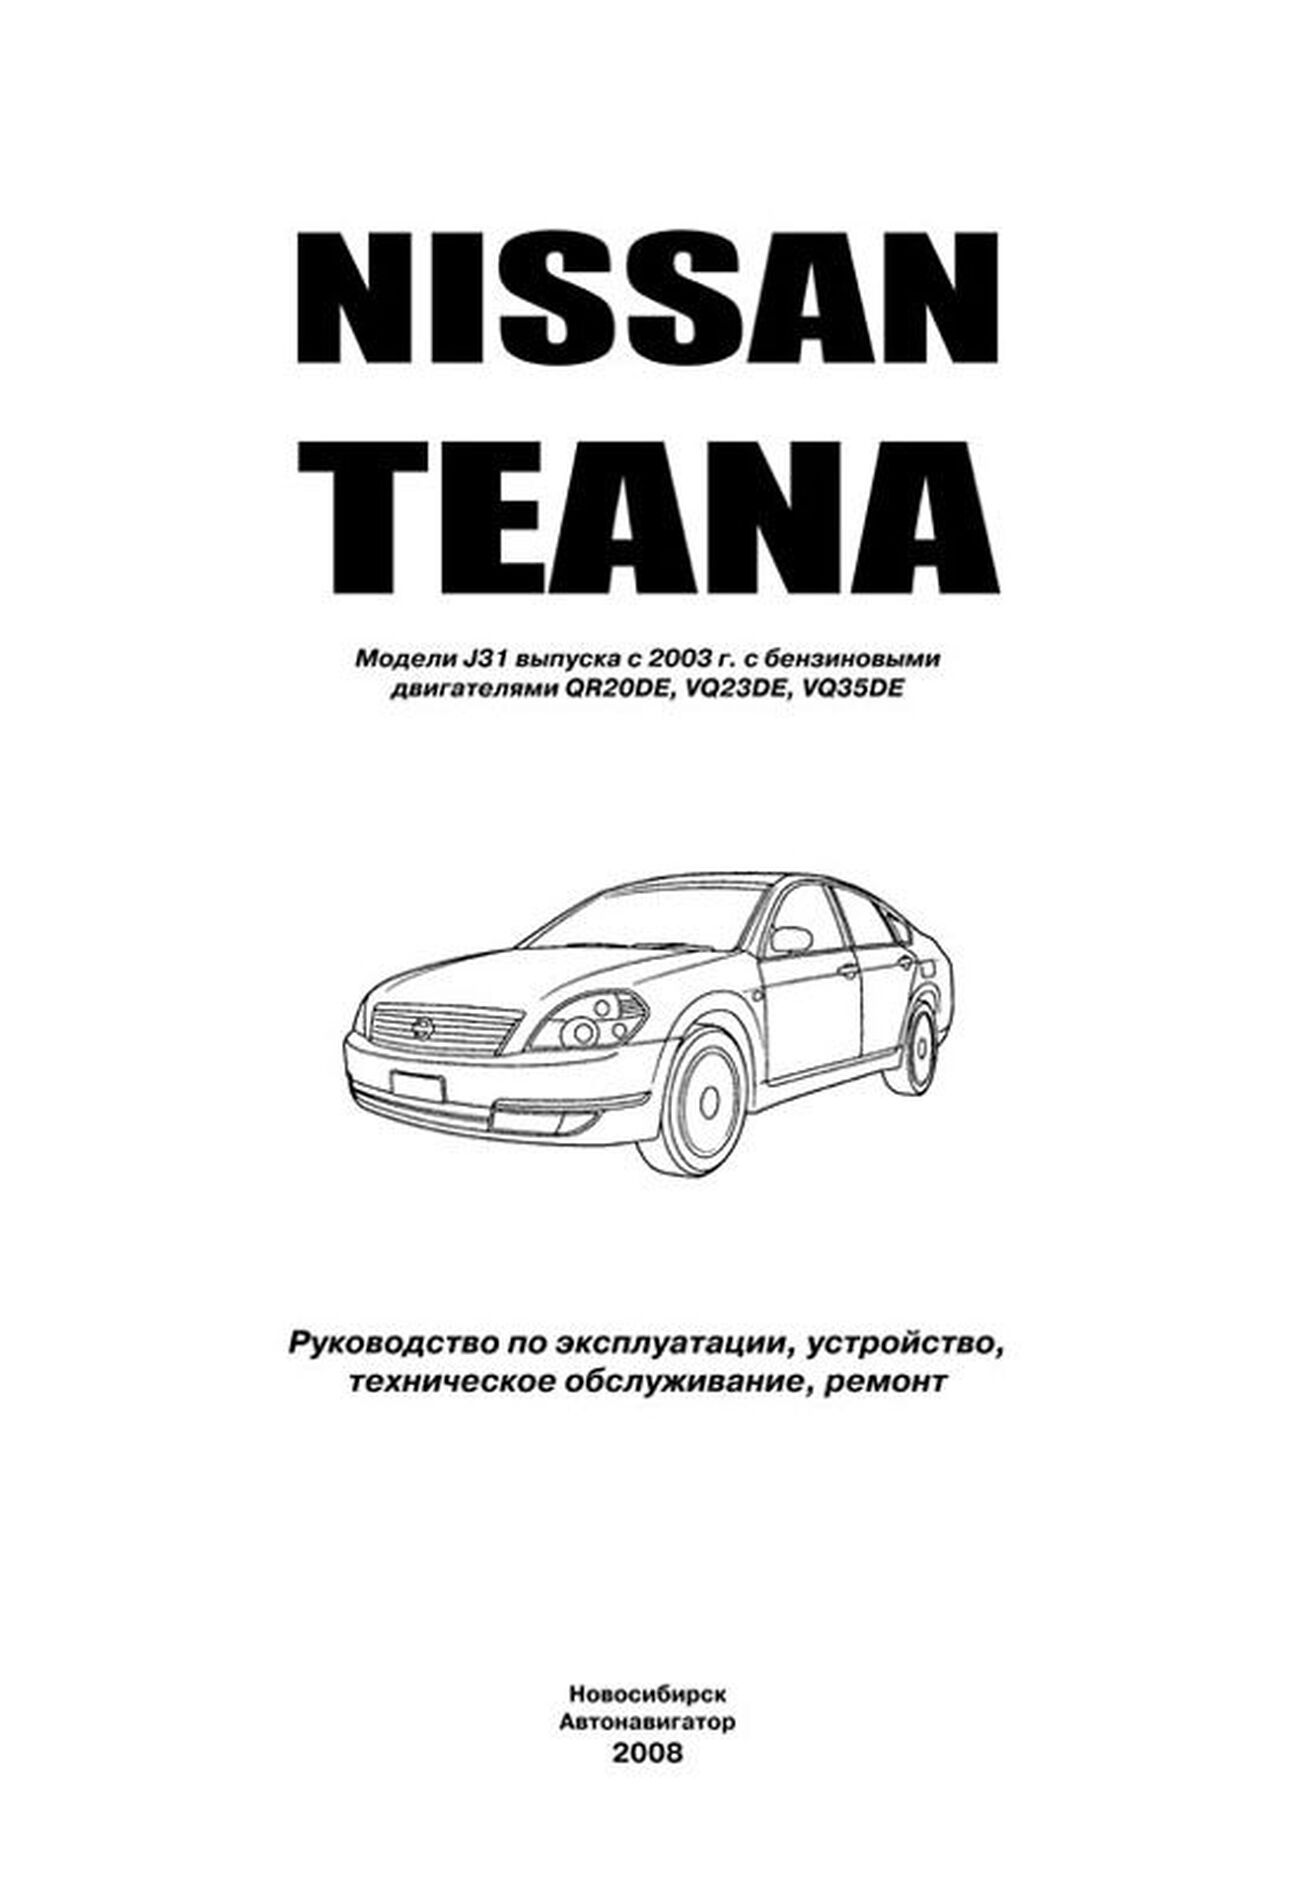 Книга: NISSAN TEANA J31 (б) с 2003 г.в., рем., экспл., то, сер.ПРОФ. | Автонавигатор